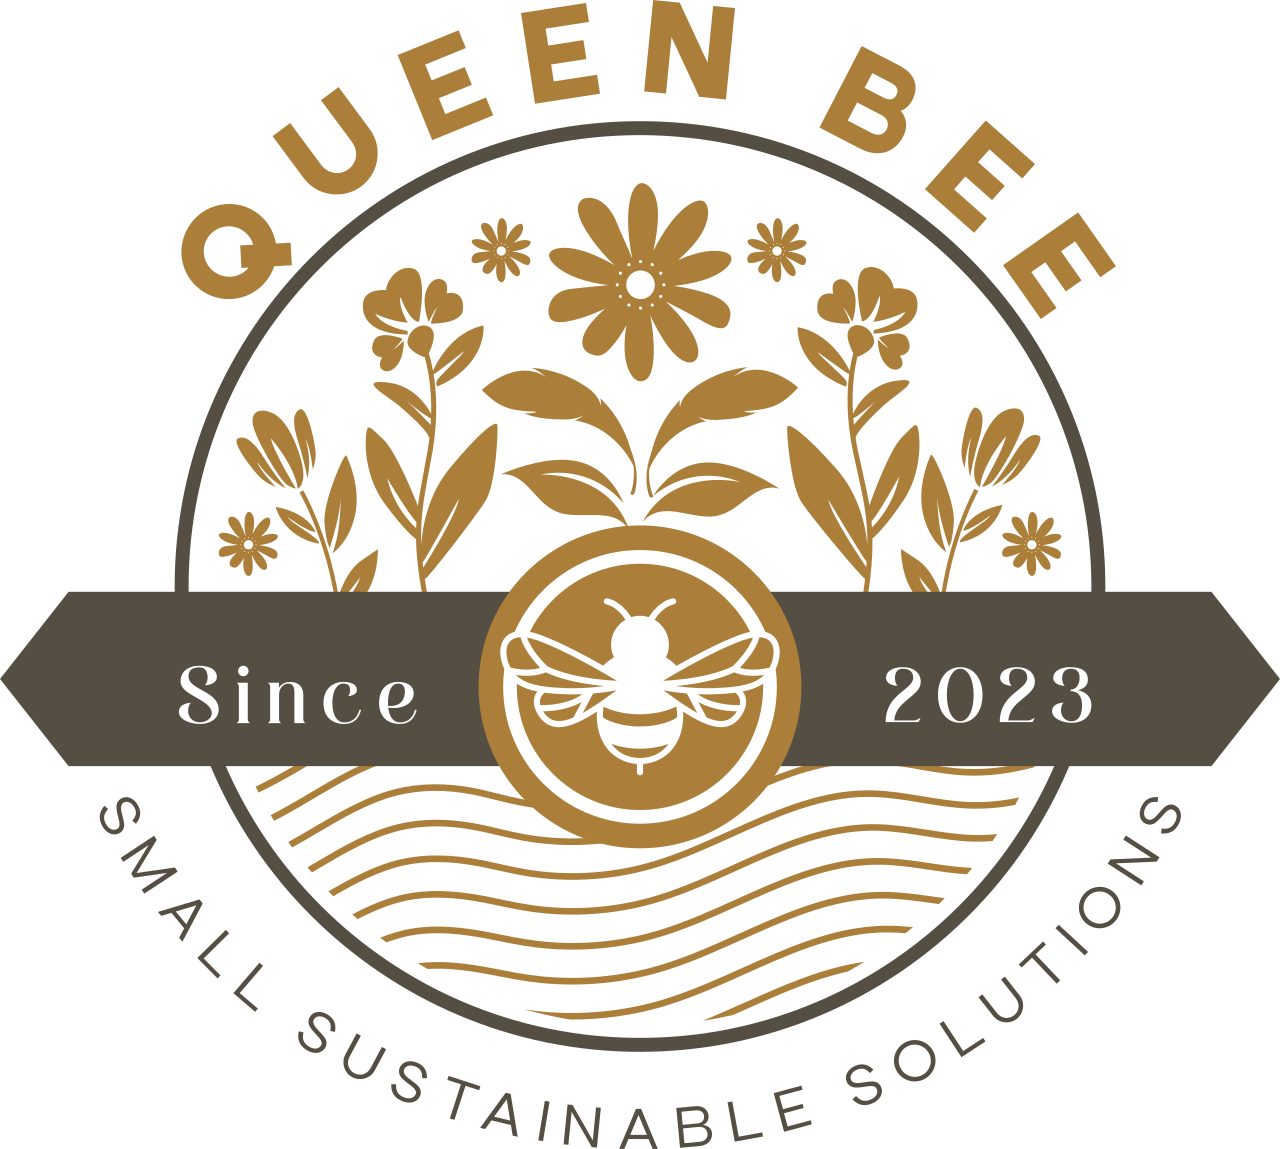 QUEEN BEE's logo